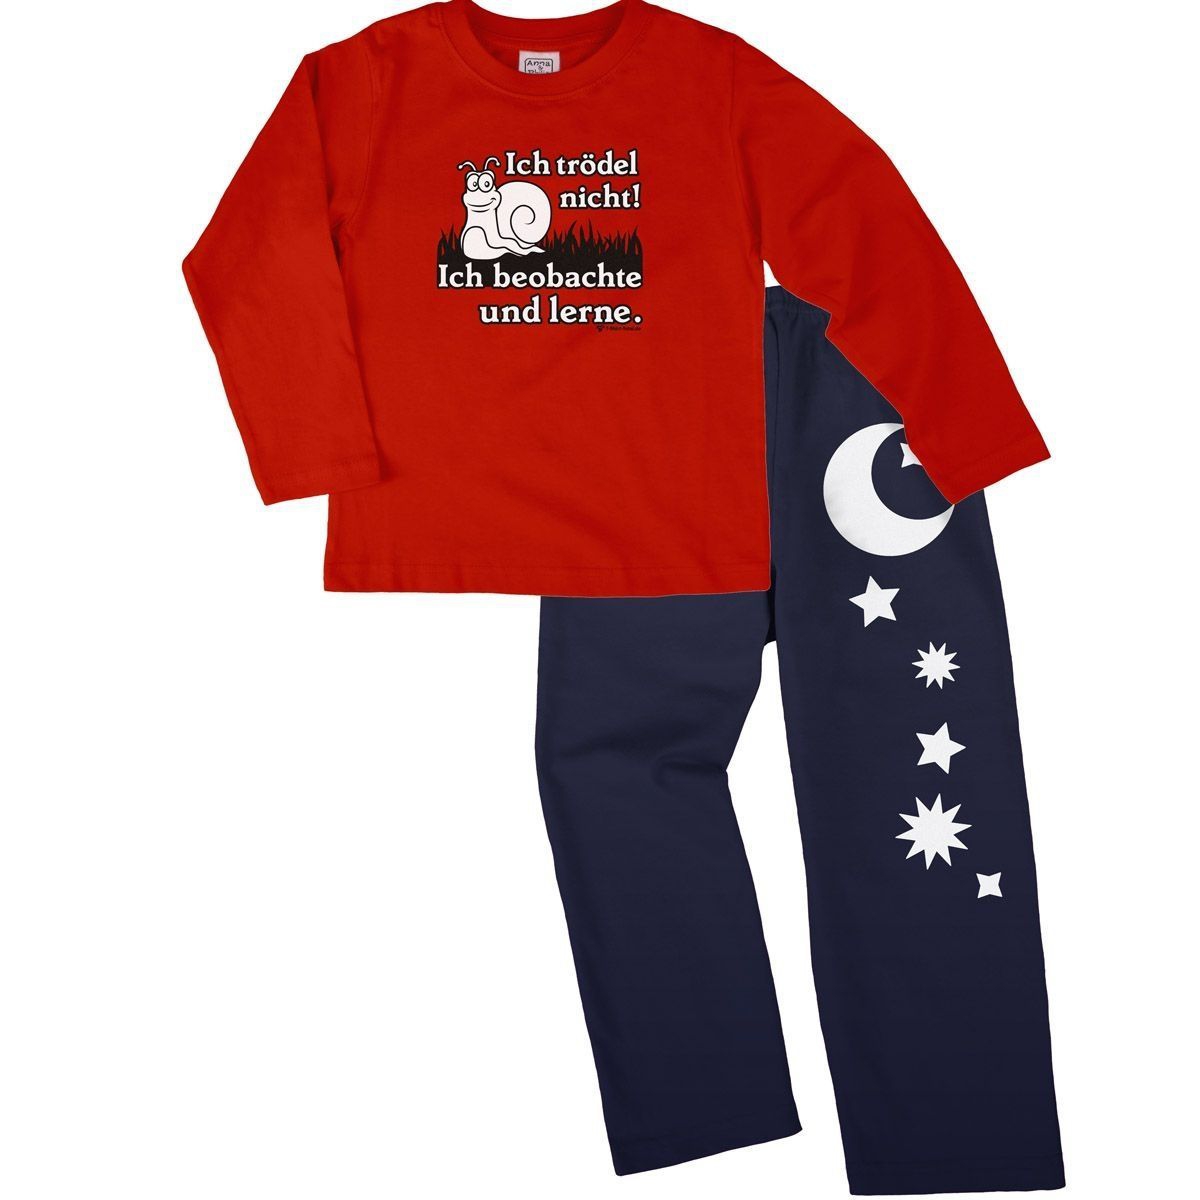 Trödel nicht Pyjama Set rot / navy 104